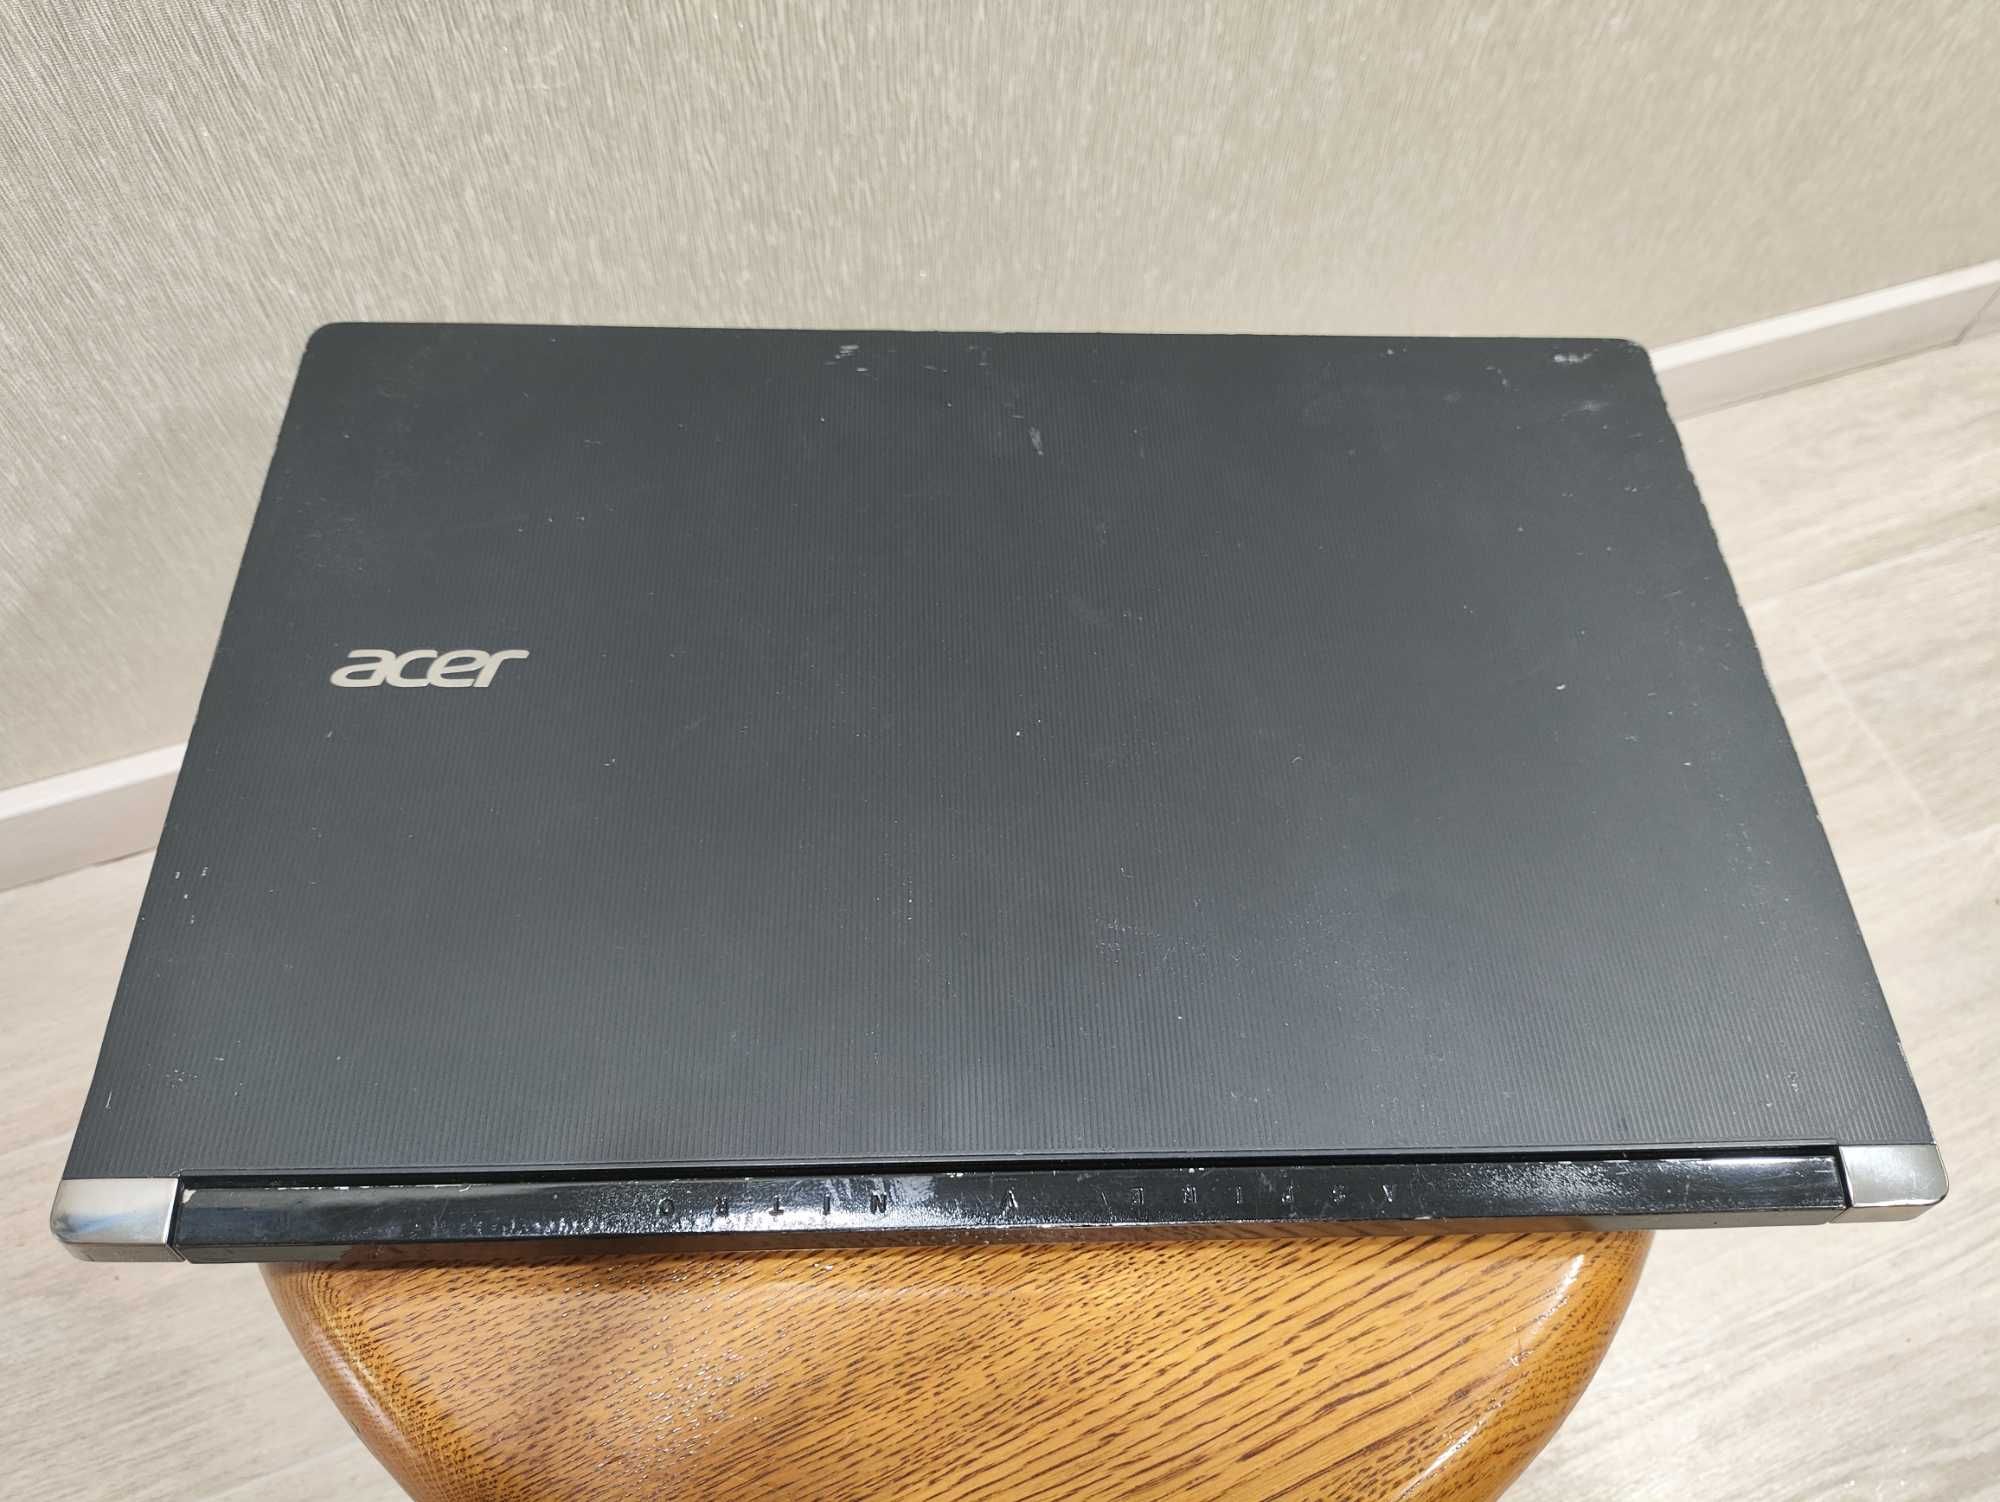 Acer Aspire V15 Nitro VN7-591G i7-4710HQ GTX 860M 2GB